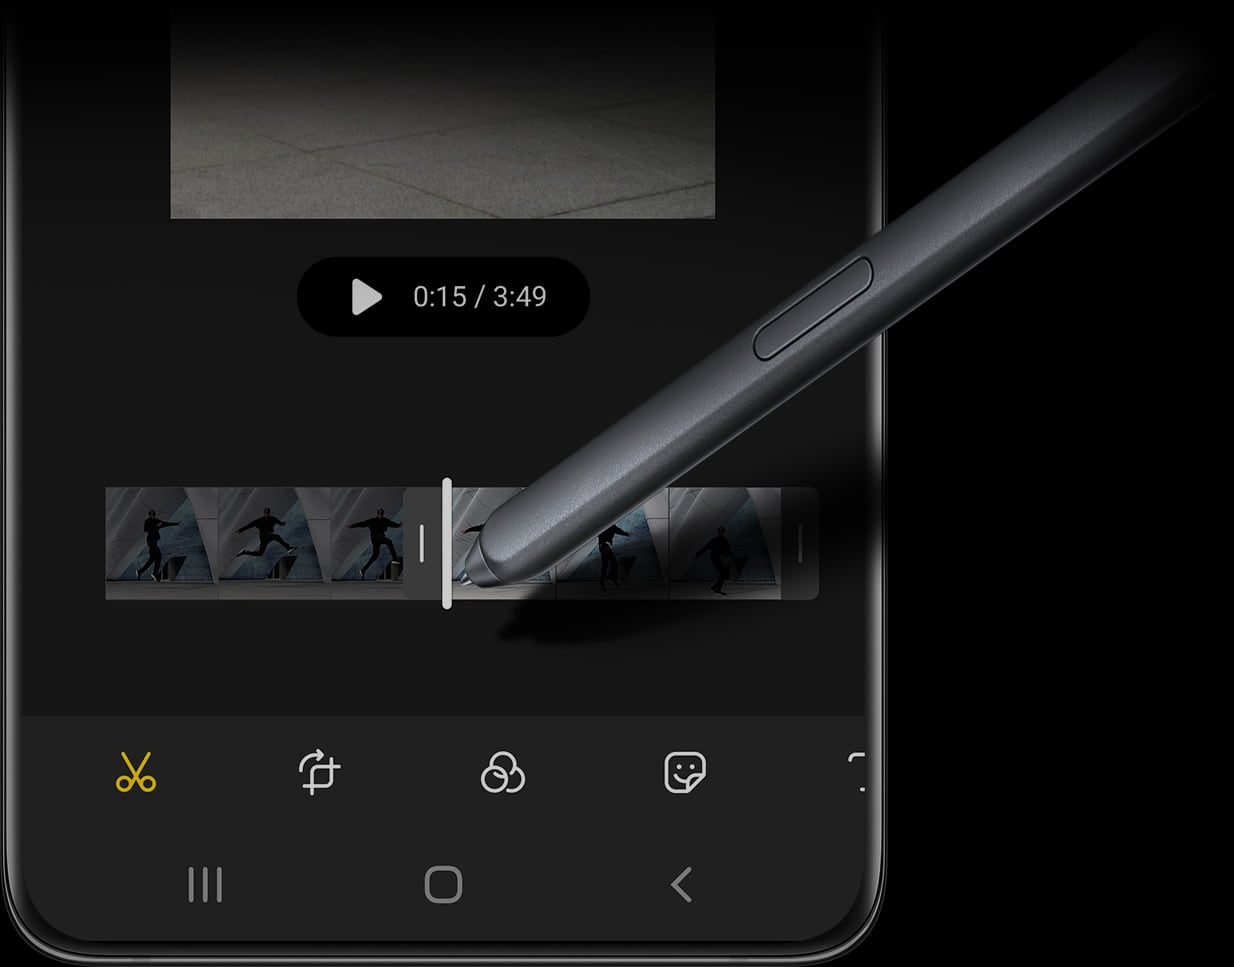 S Pen vu utilisé sur le Galaxy S21 Ultra 5G avec l’interface utilisateur graphique (GUI) d’édition vidéo à l’écran.